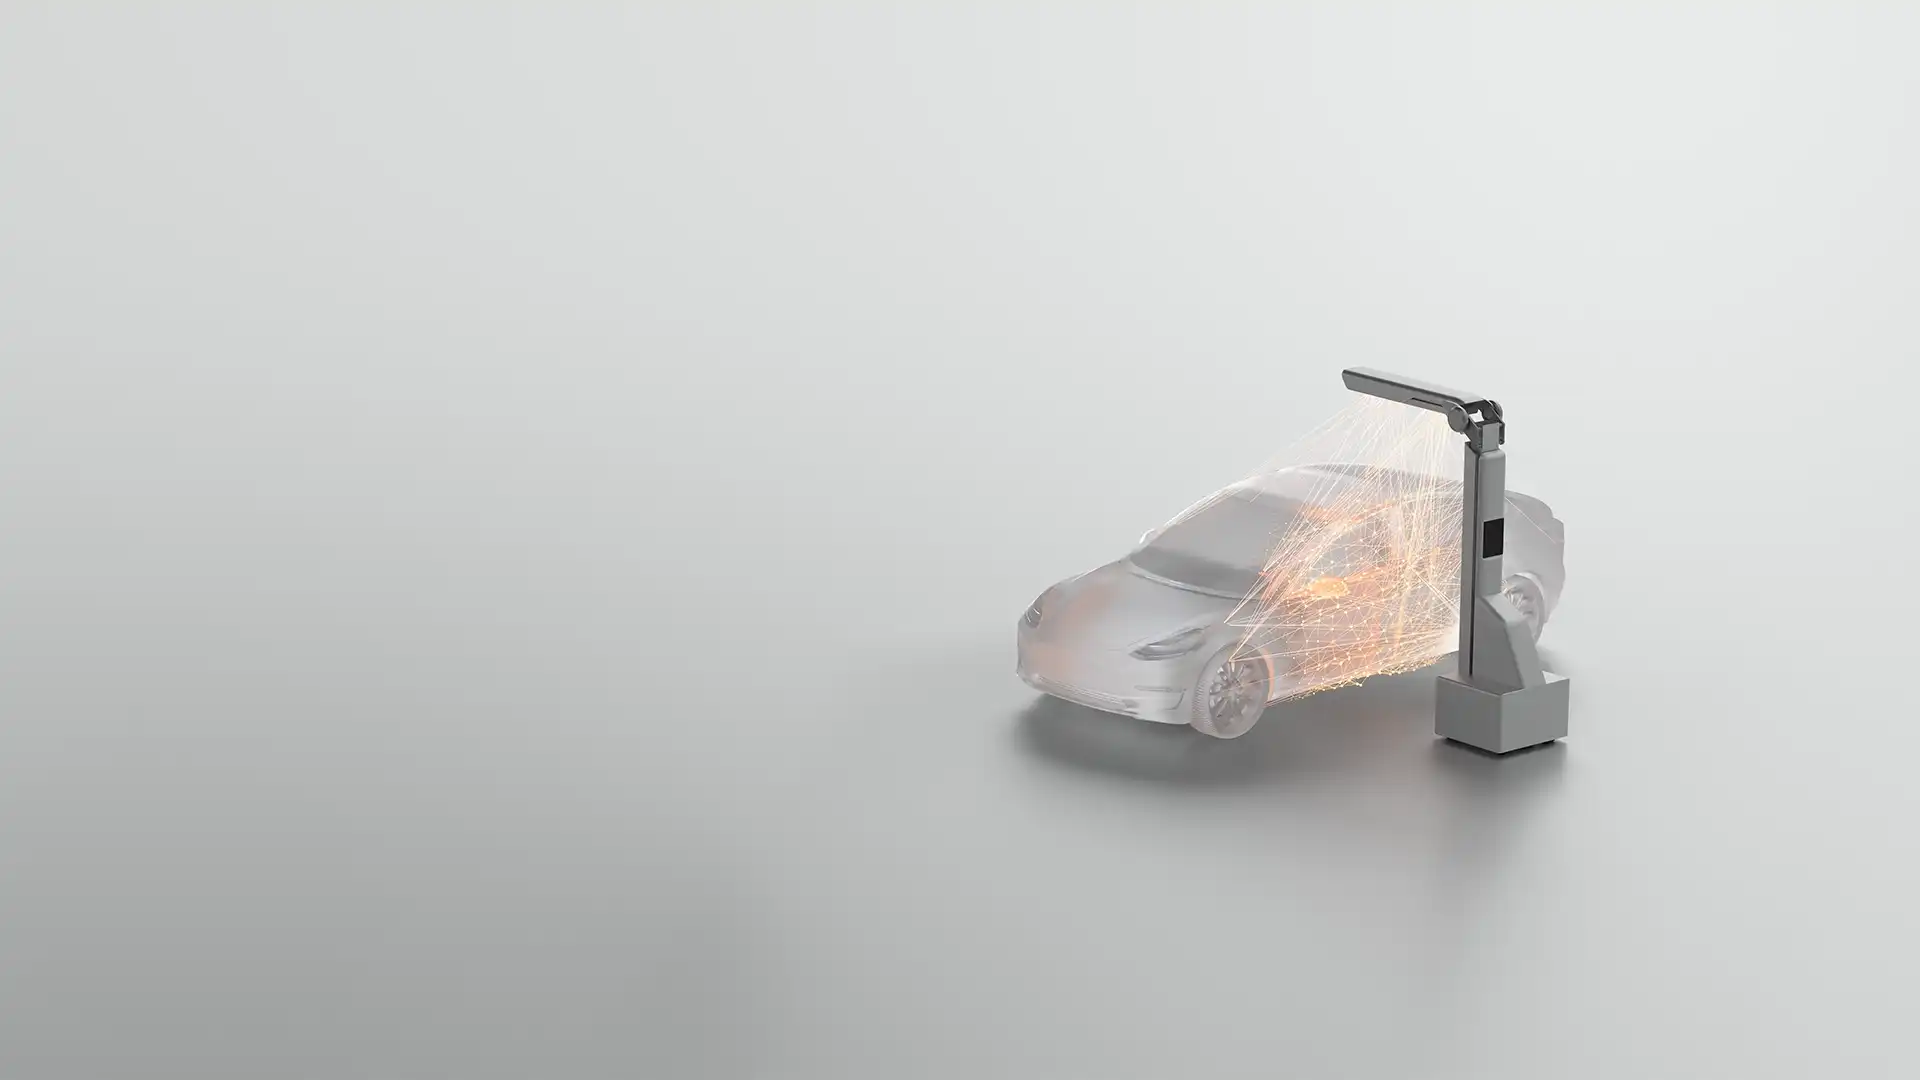 Autonomous robot scanning a vehicle